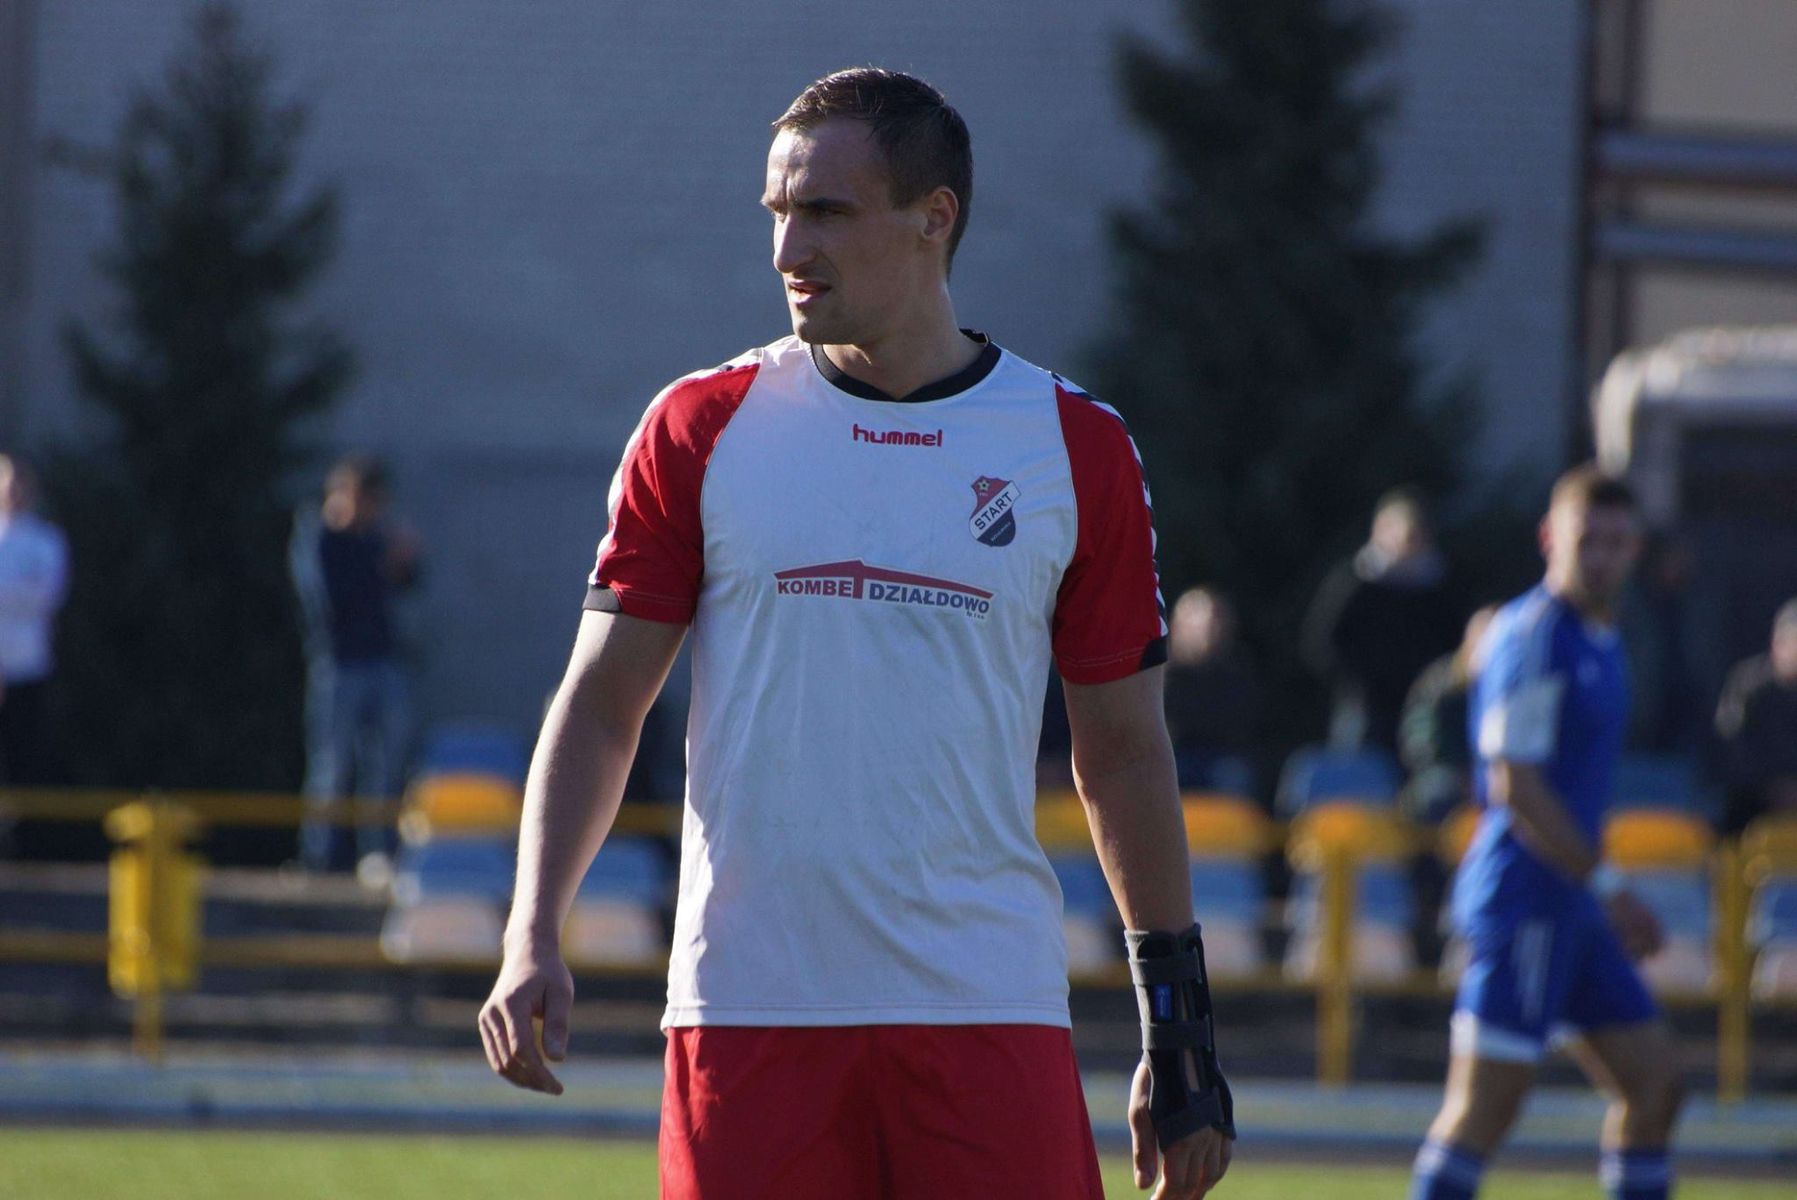 Tomasz Chadzyński wierzy w zwycięstwo swoje drużyny nie tylko w Mońkach ale również w całych rozgrywkach. Fot. Dariusz Budziński